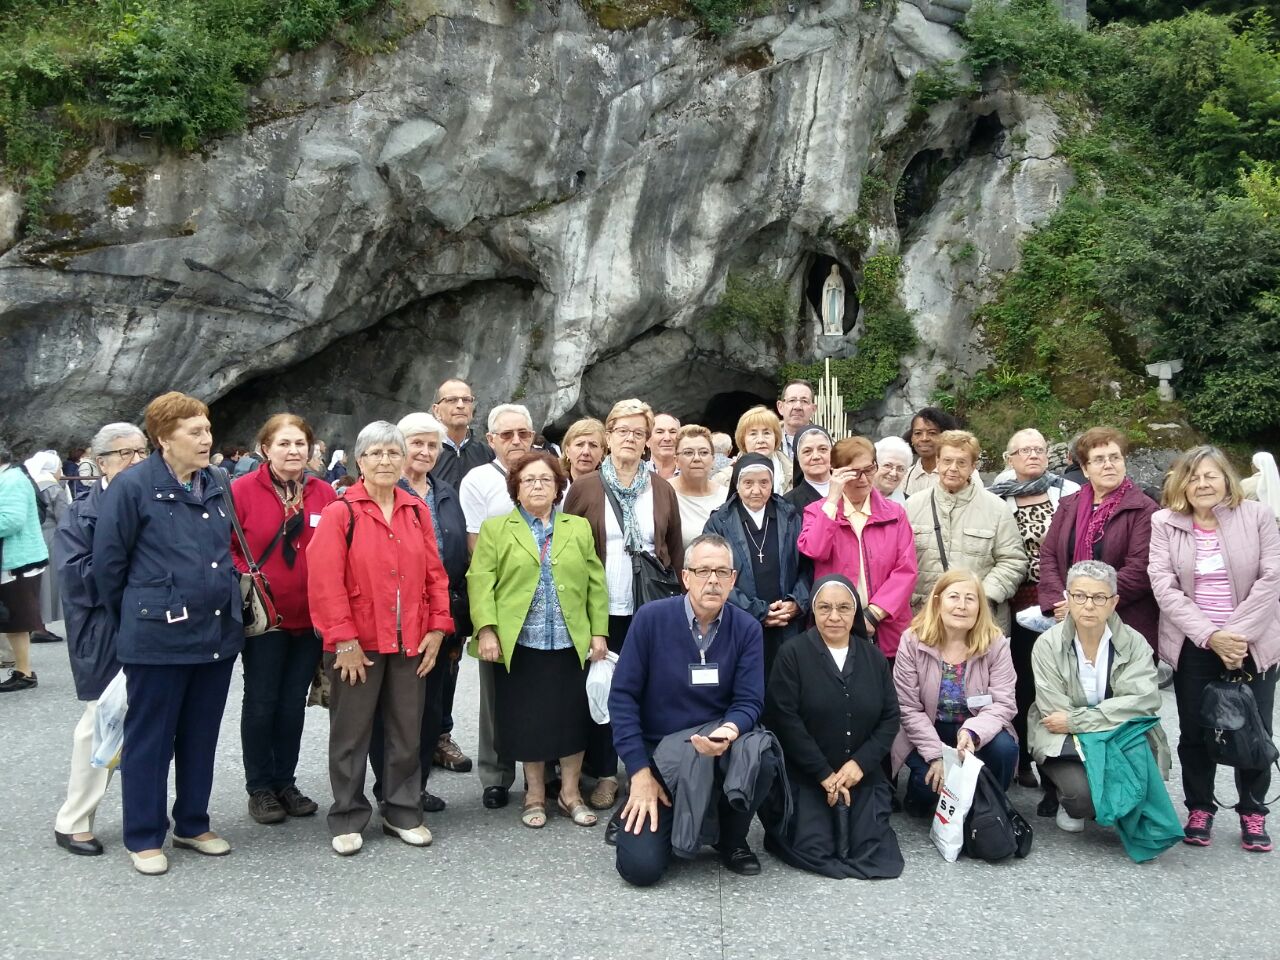 en la cueva de Lourdes posando para una foto.